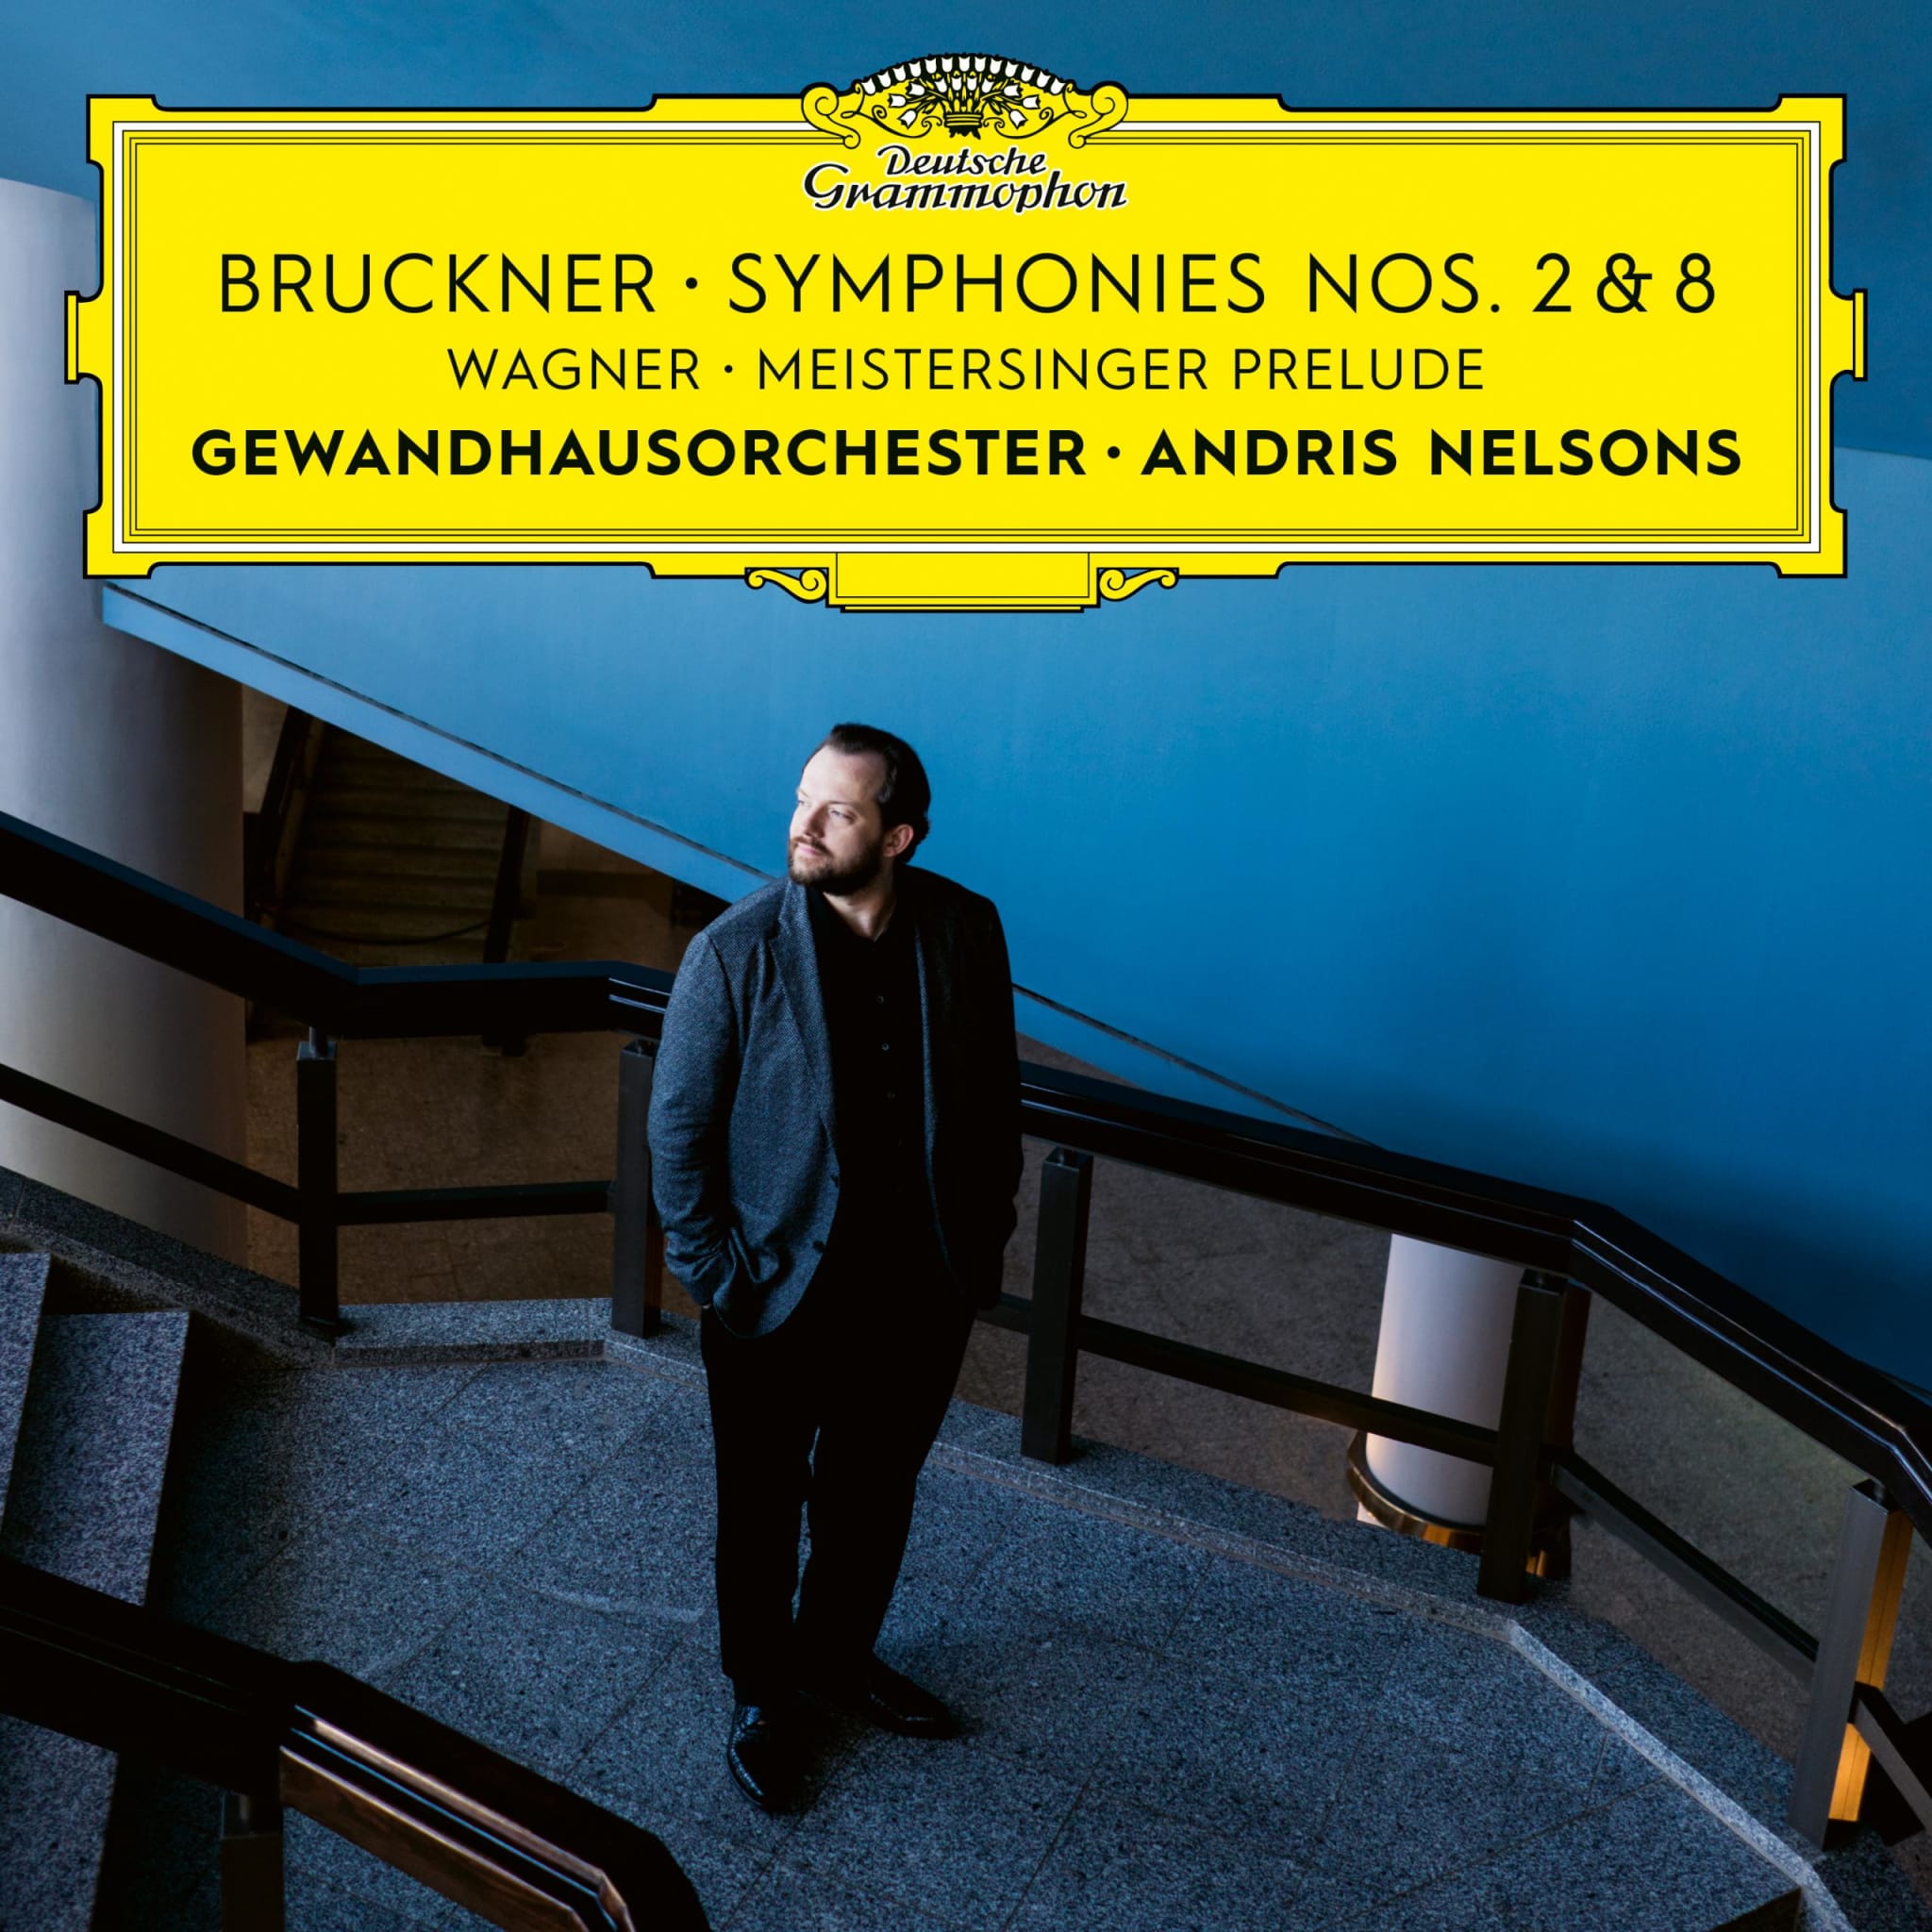 Bruckner: Symphonies Nos. 2 & 8 / Wagner: Meistersinger Prelude